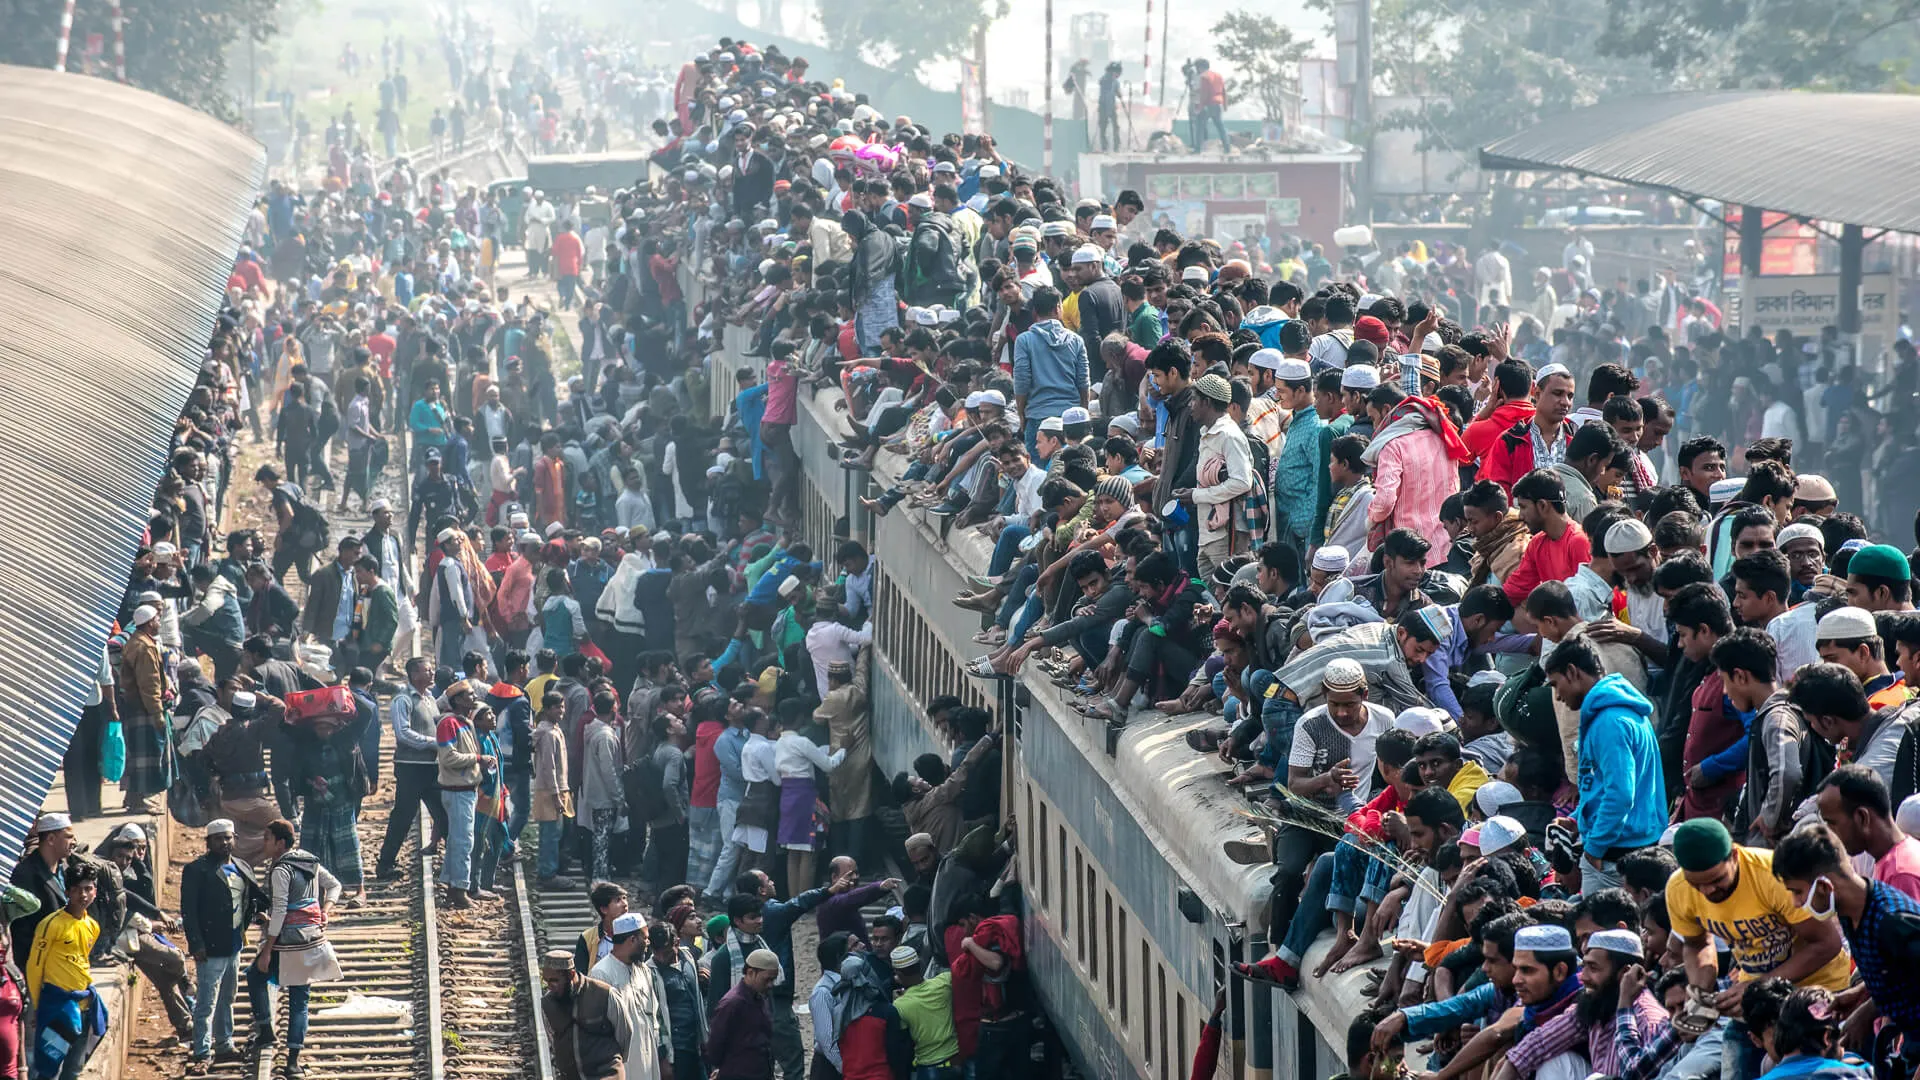 Dhaka Bangladesh train full of passengers due to overpopulation